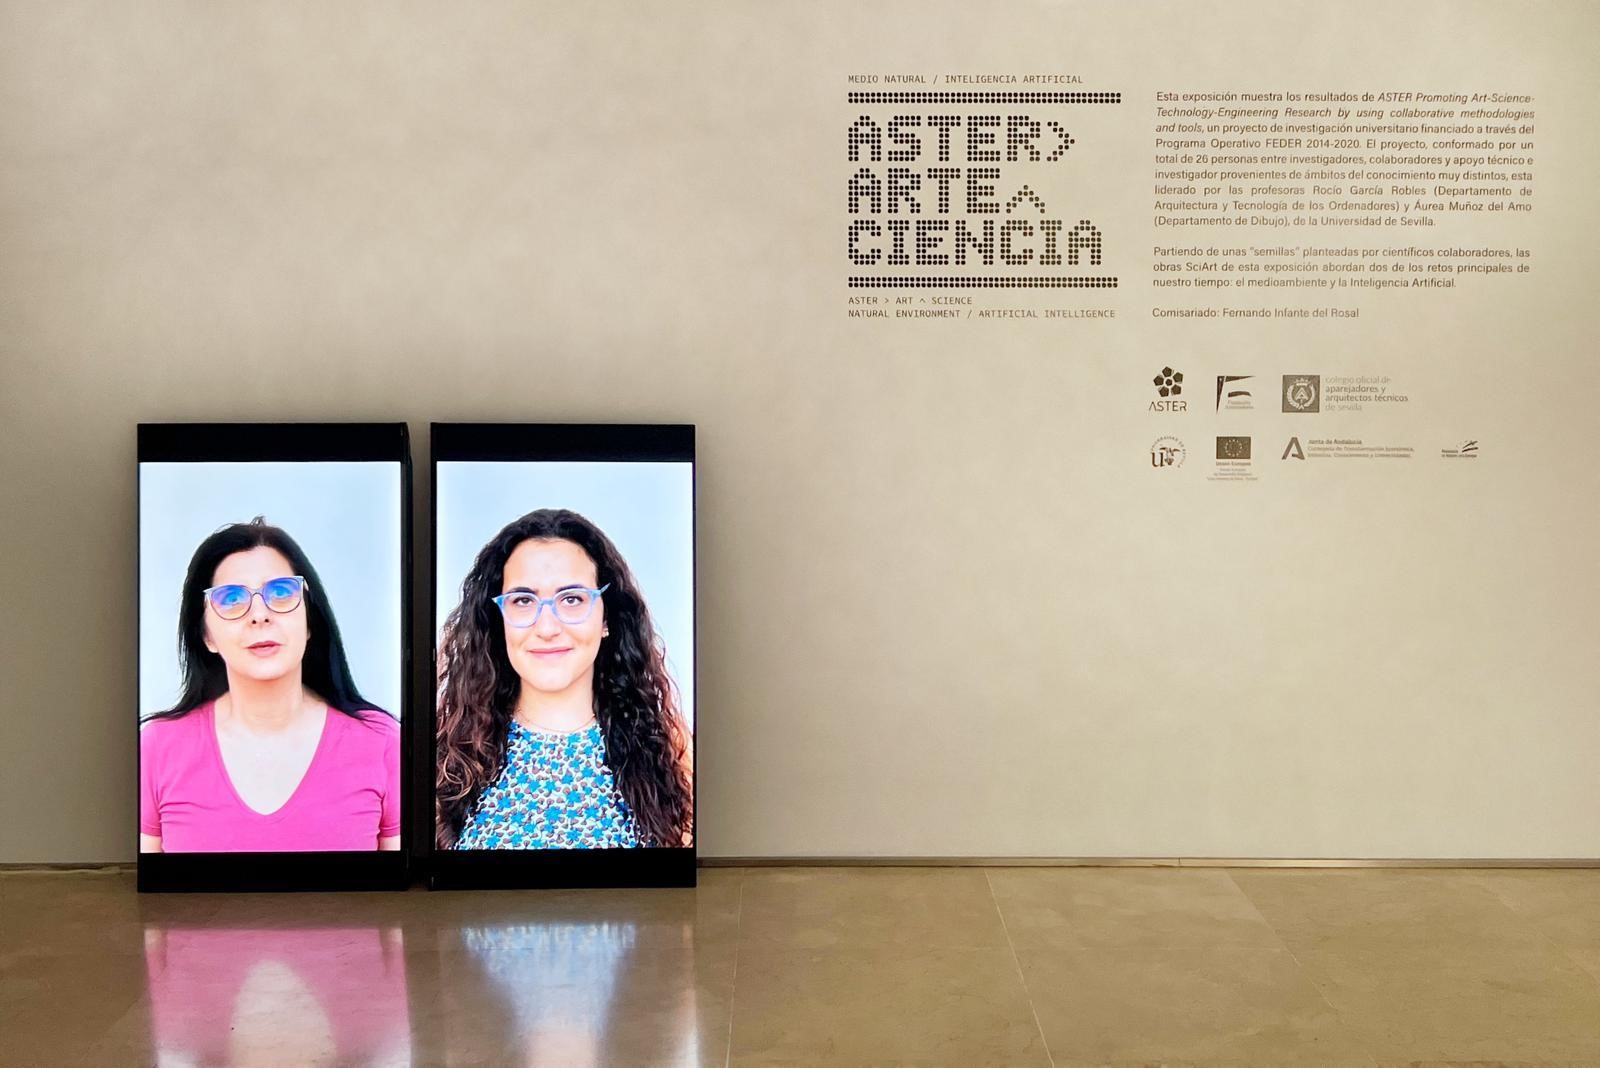 Professora do curso de Design do IMT e doutoranda de Arte da Universidade de Sevilha participam da exposição na Espanha: ASTER>ARTE^CIENCIA